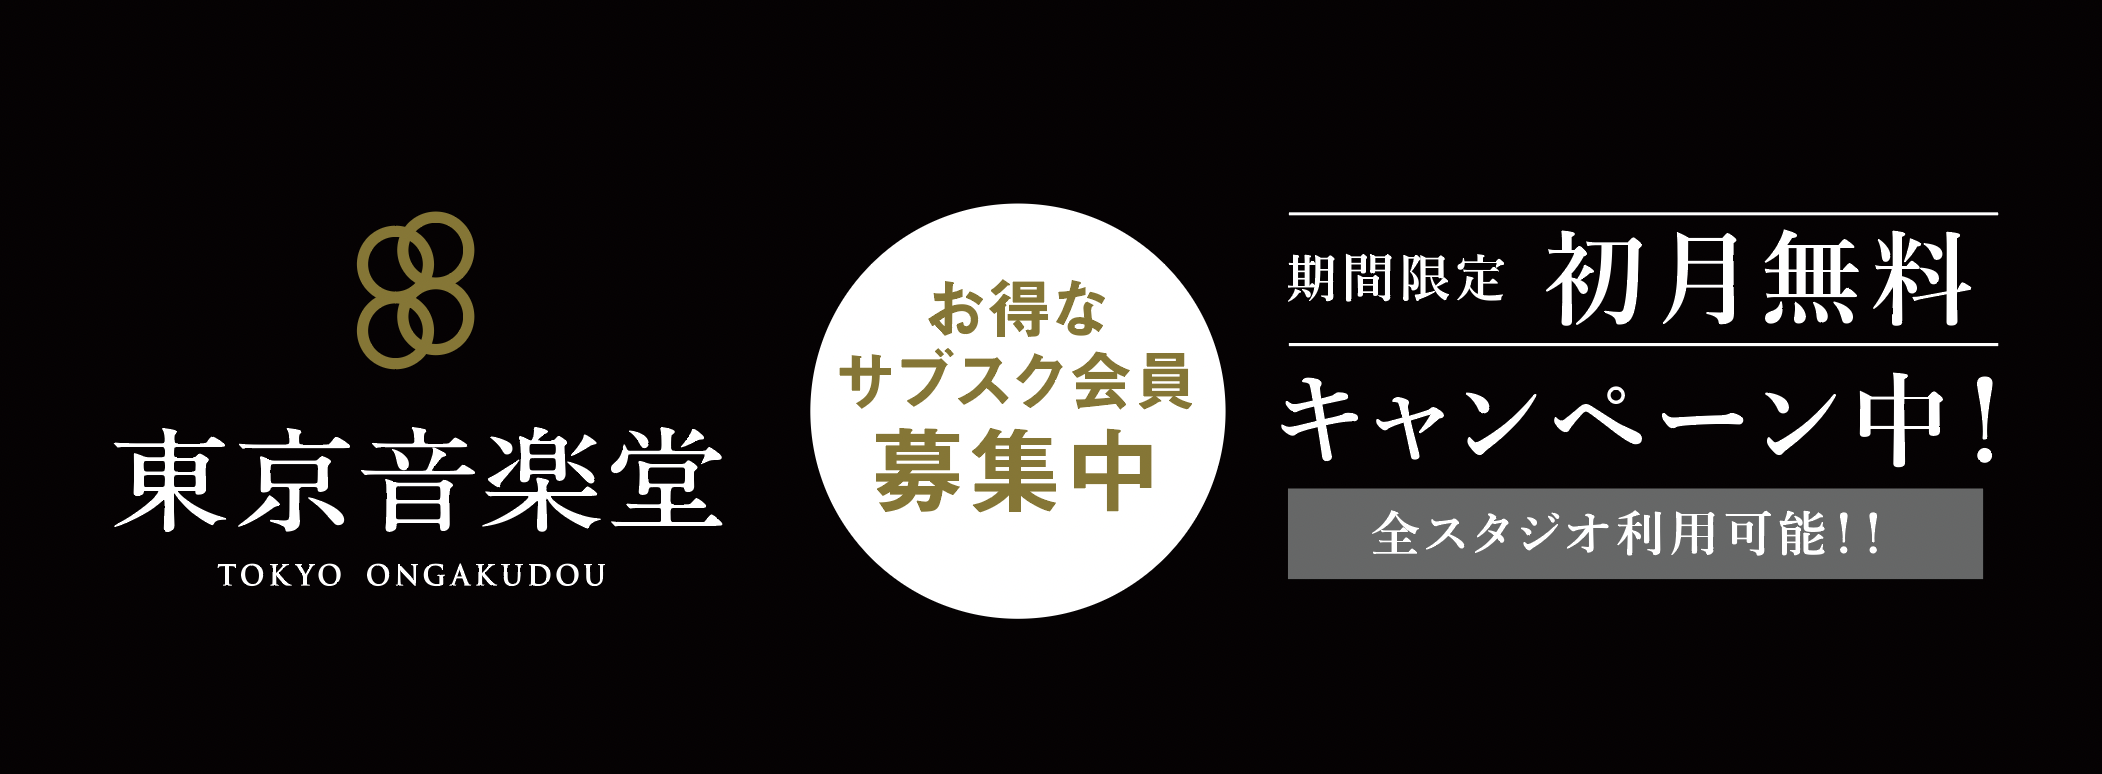 東京音楽堂お得なサブスクプラン初月無料キャンペーン